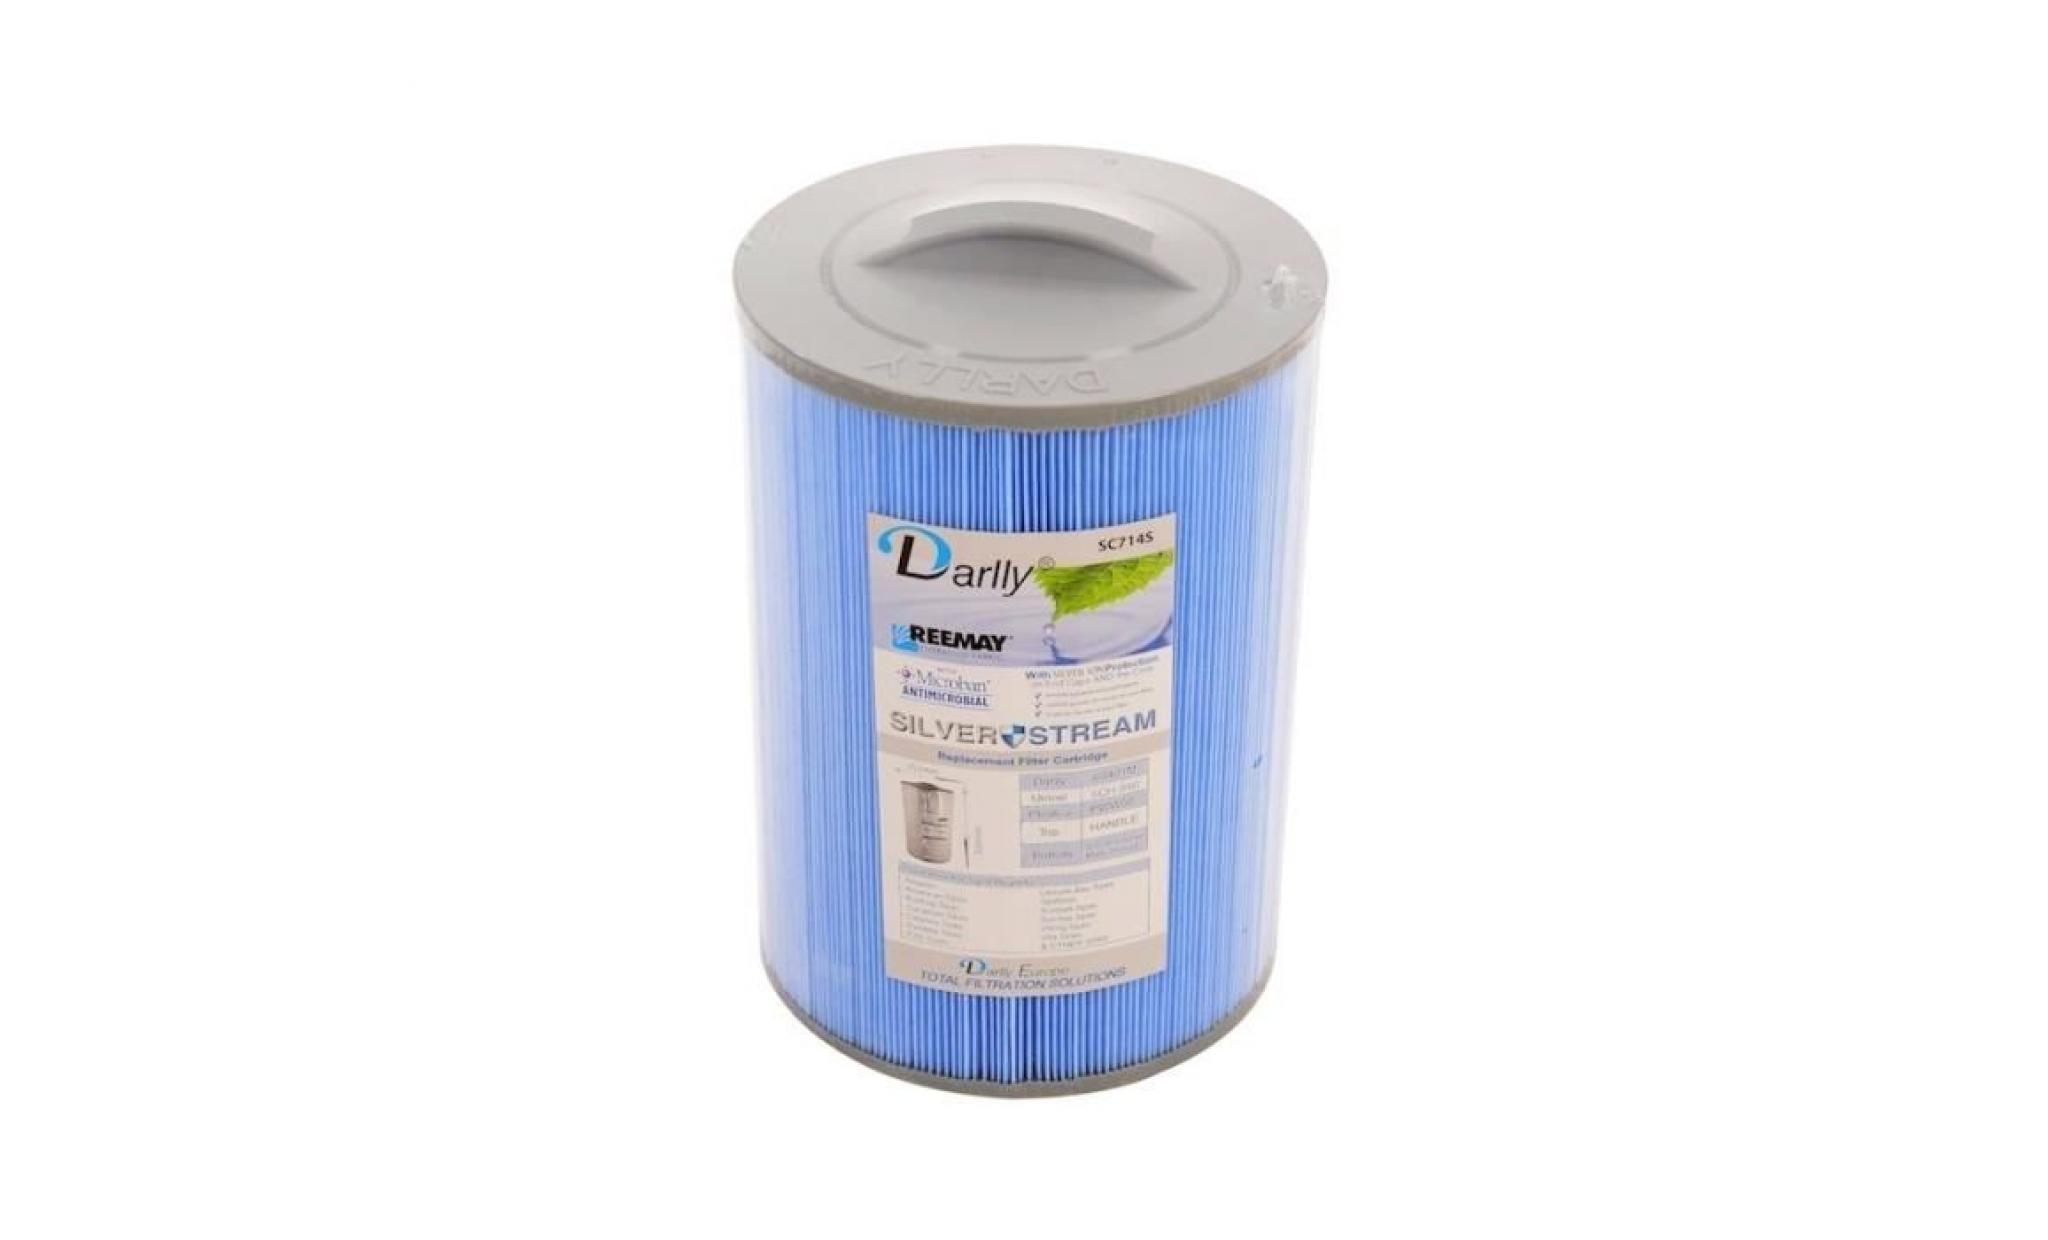 filtre anti bactérien pour spa 60401 / 6ch 940 / pww50 / fc 0359 21 cm